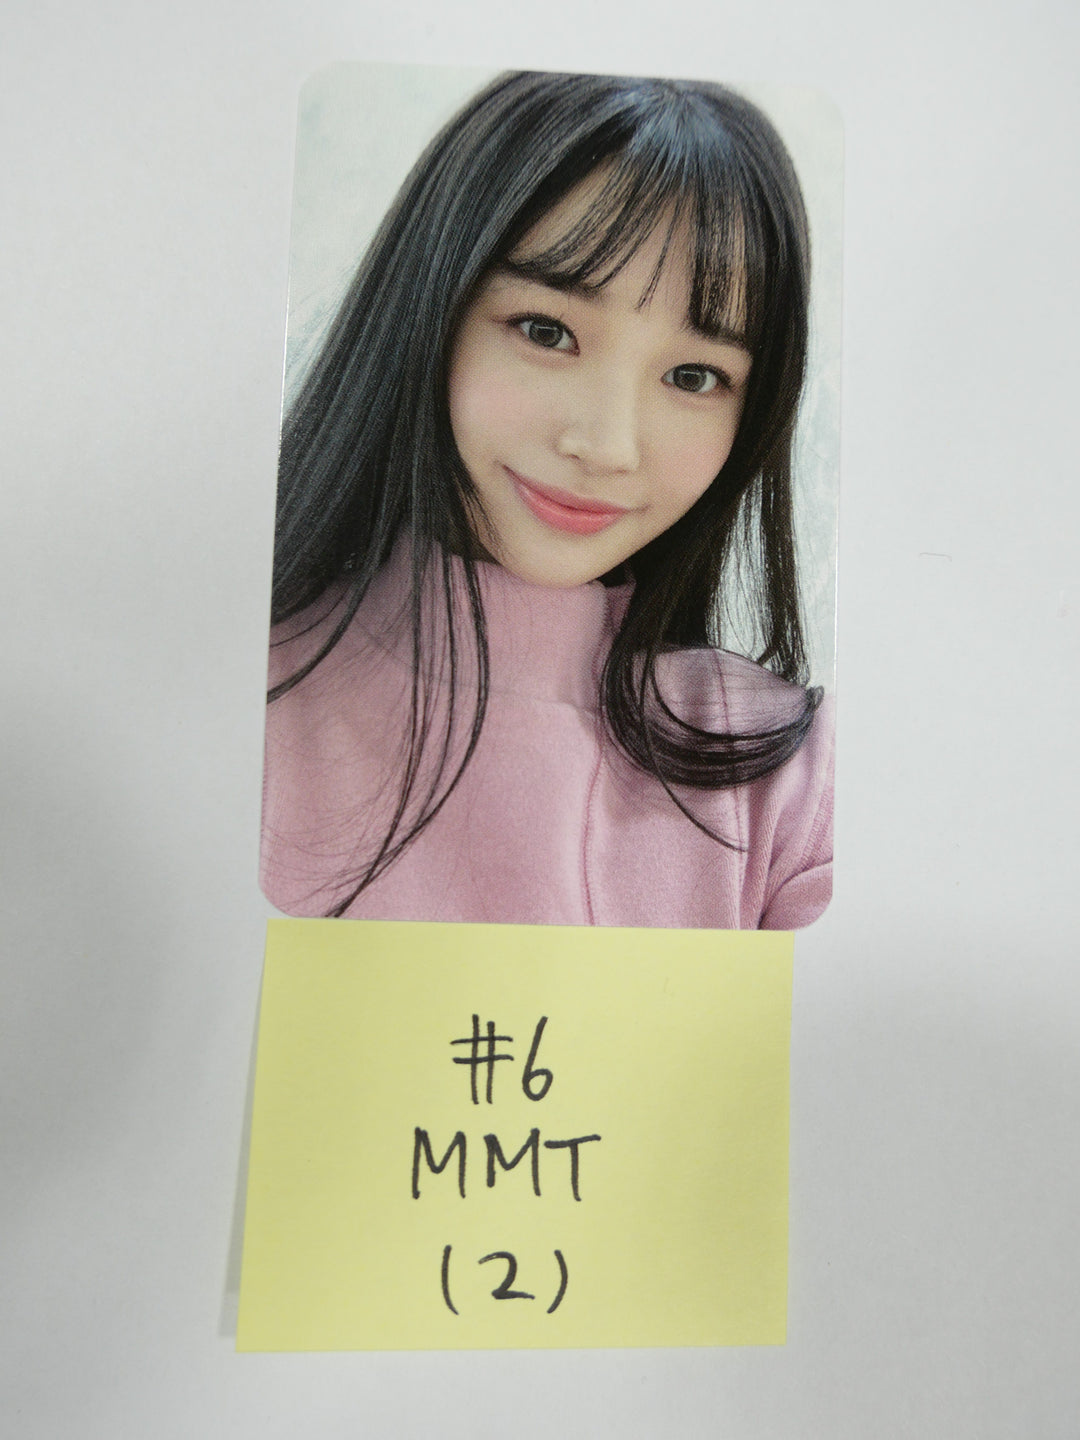 위클리 "위플레이" 미니 3집 - MMT 이벤트 선주문 포토카드